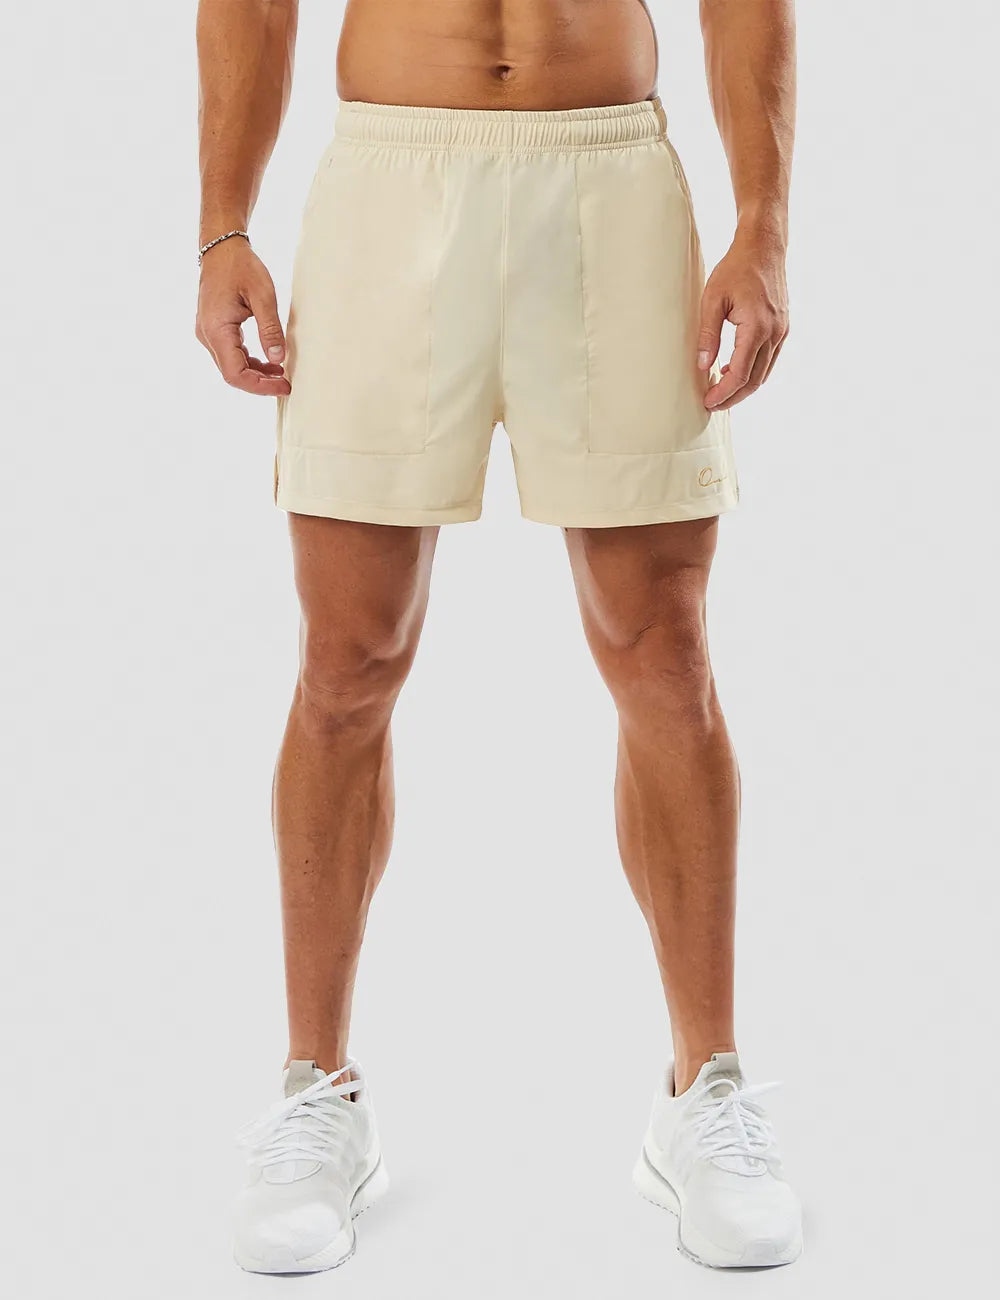 Solid Gym Shorts 5" - Grey